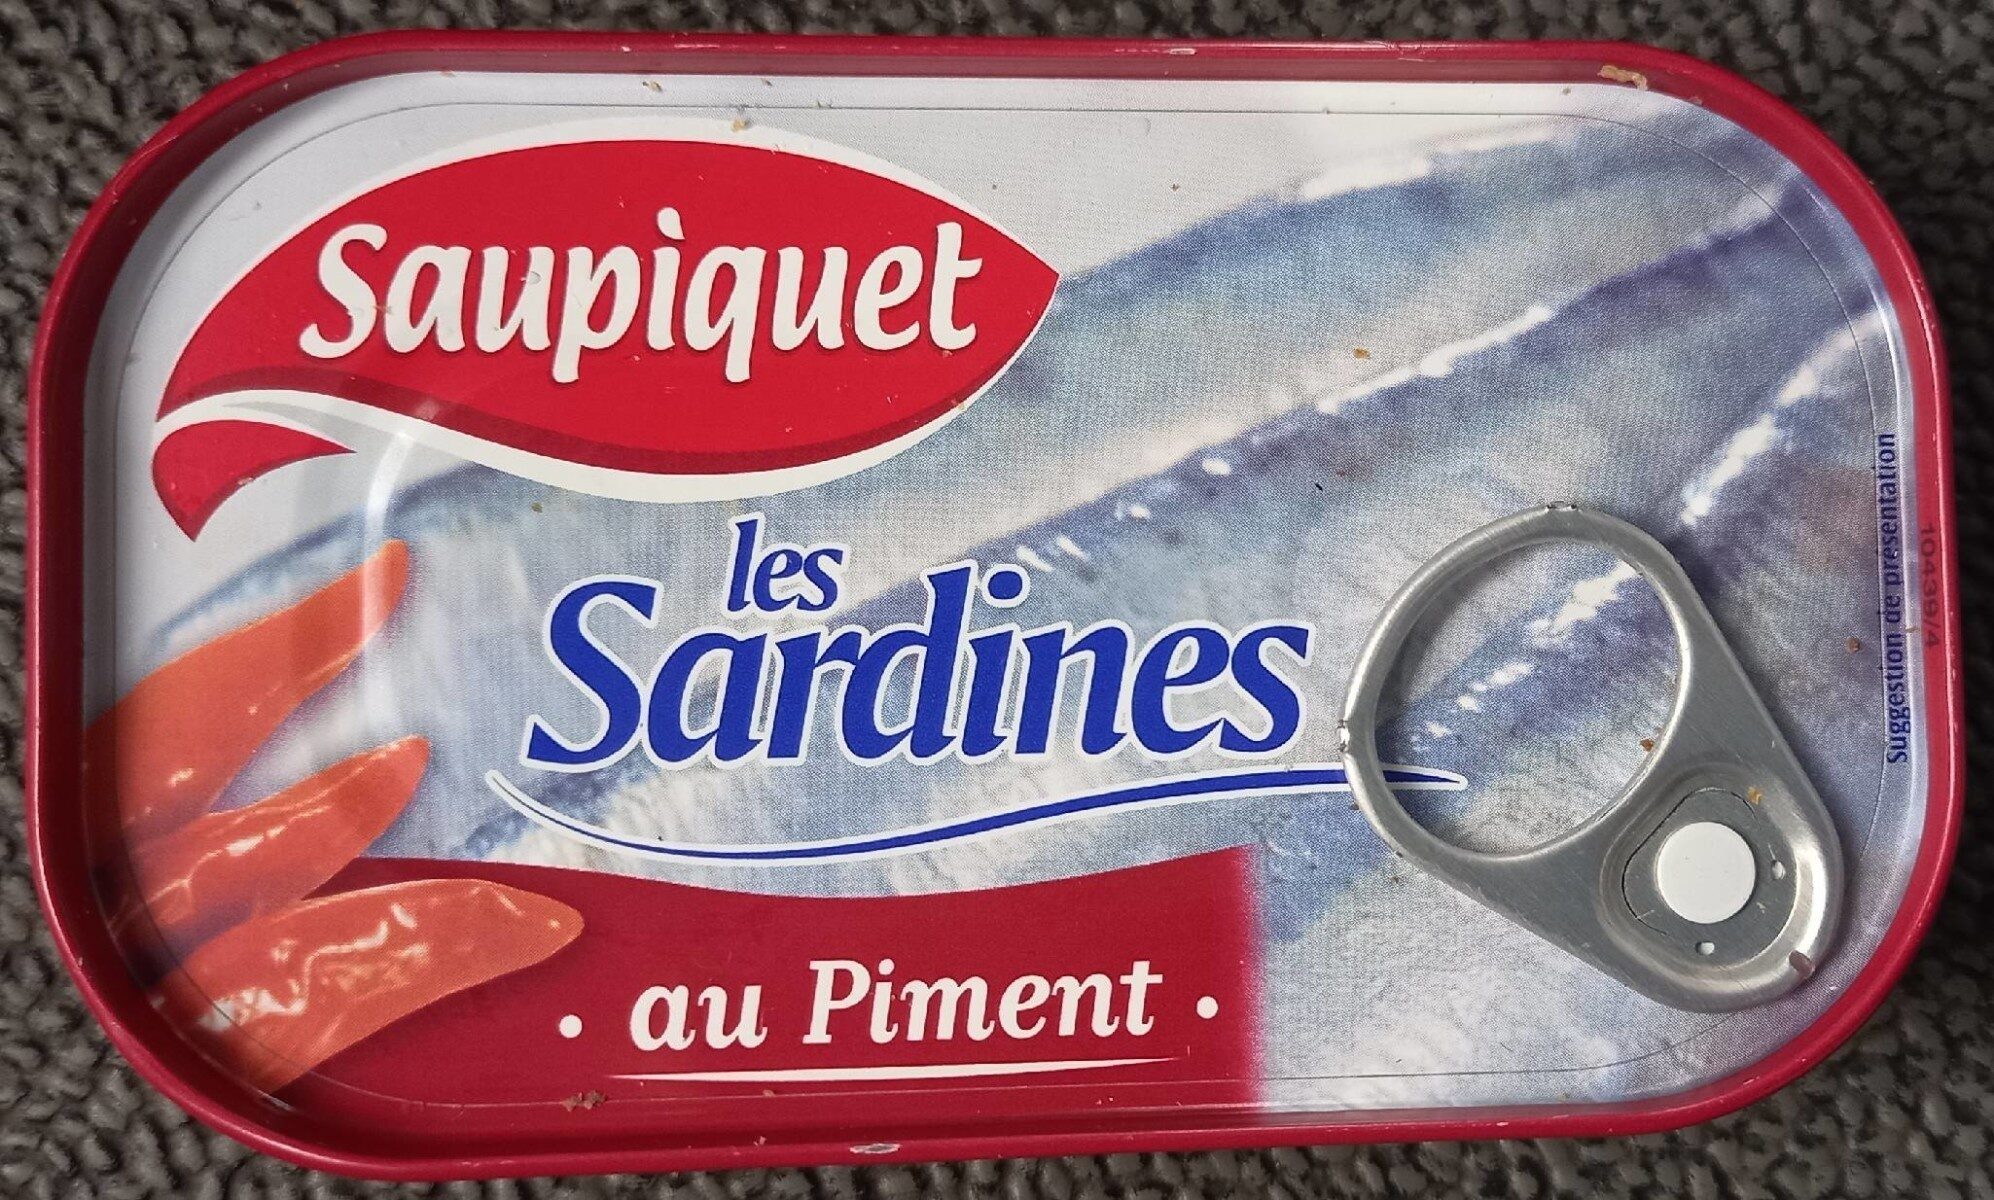 Les sardines - Saupiquet - 120g